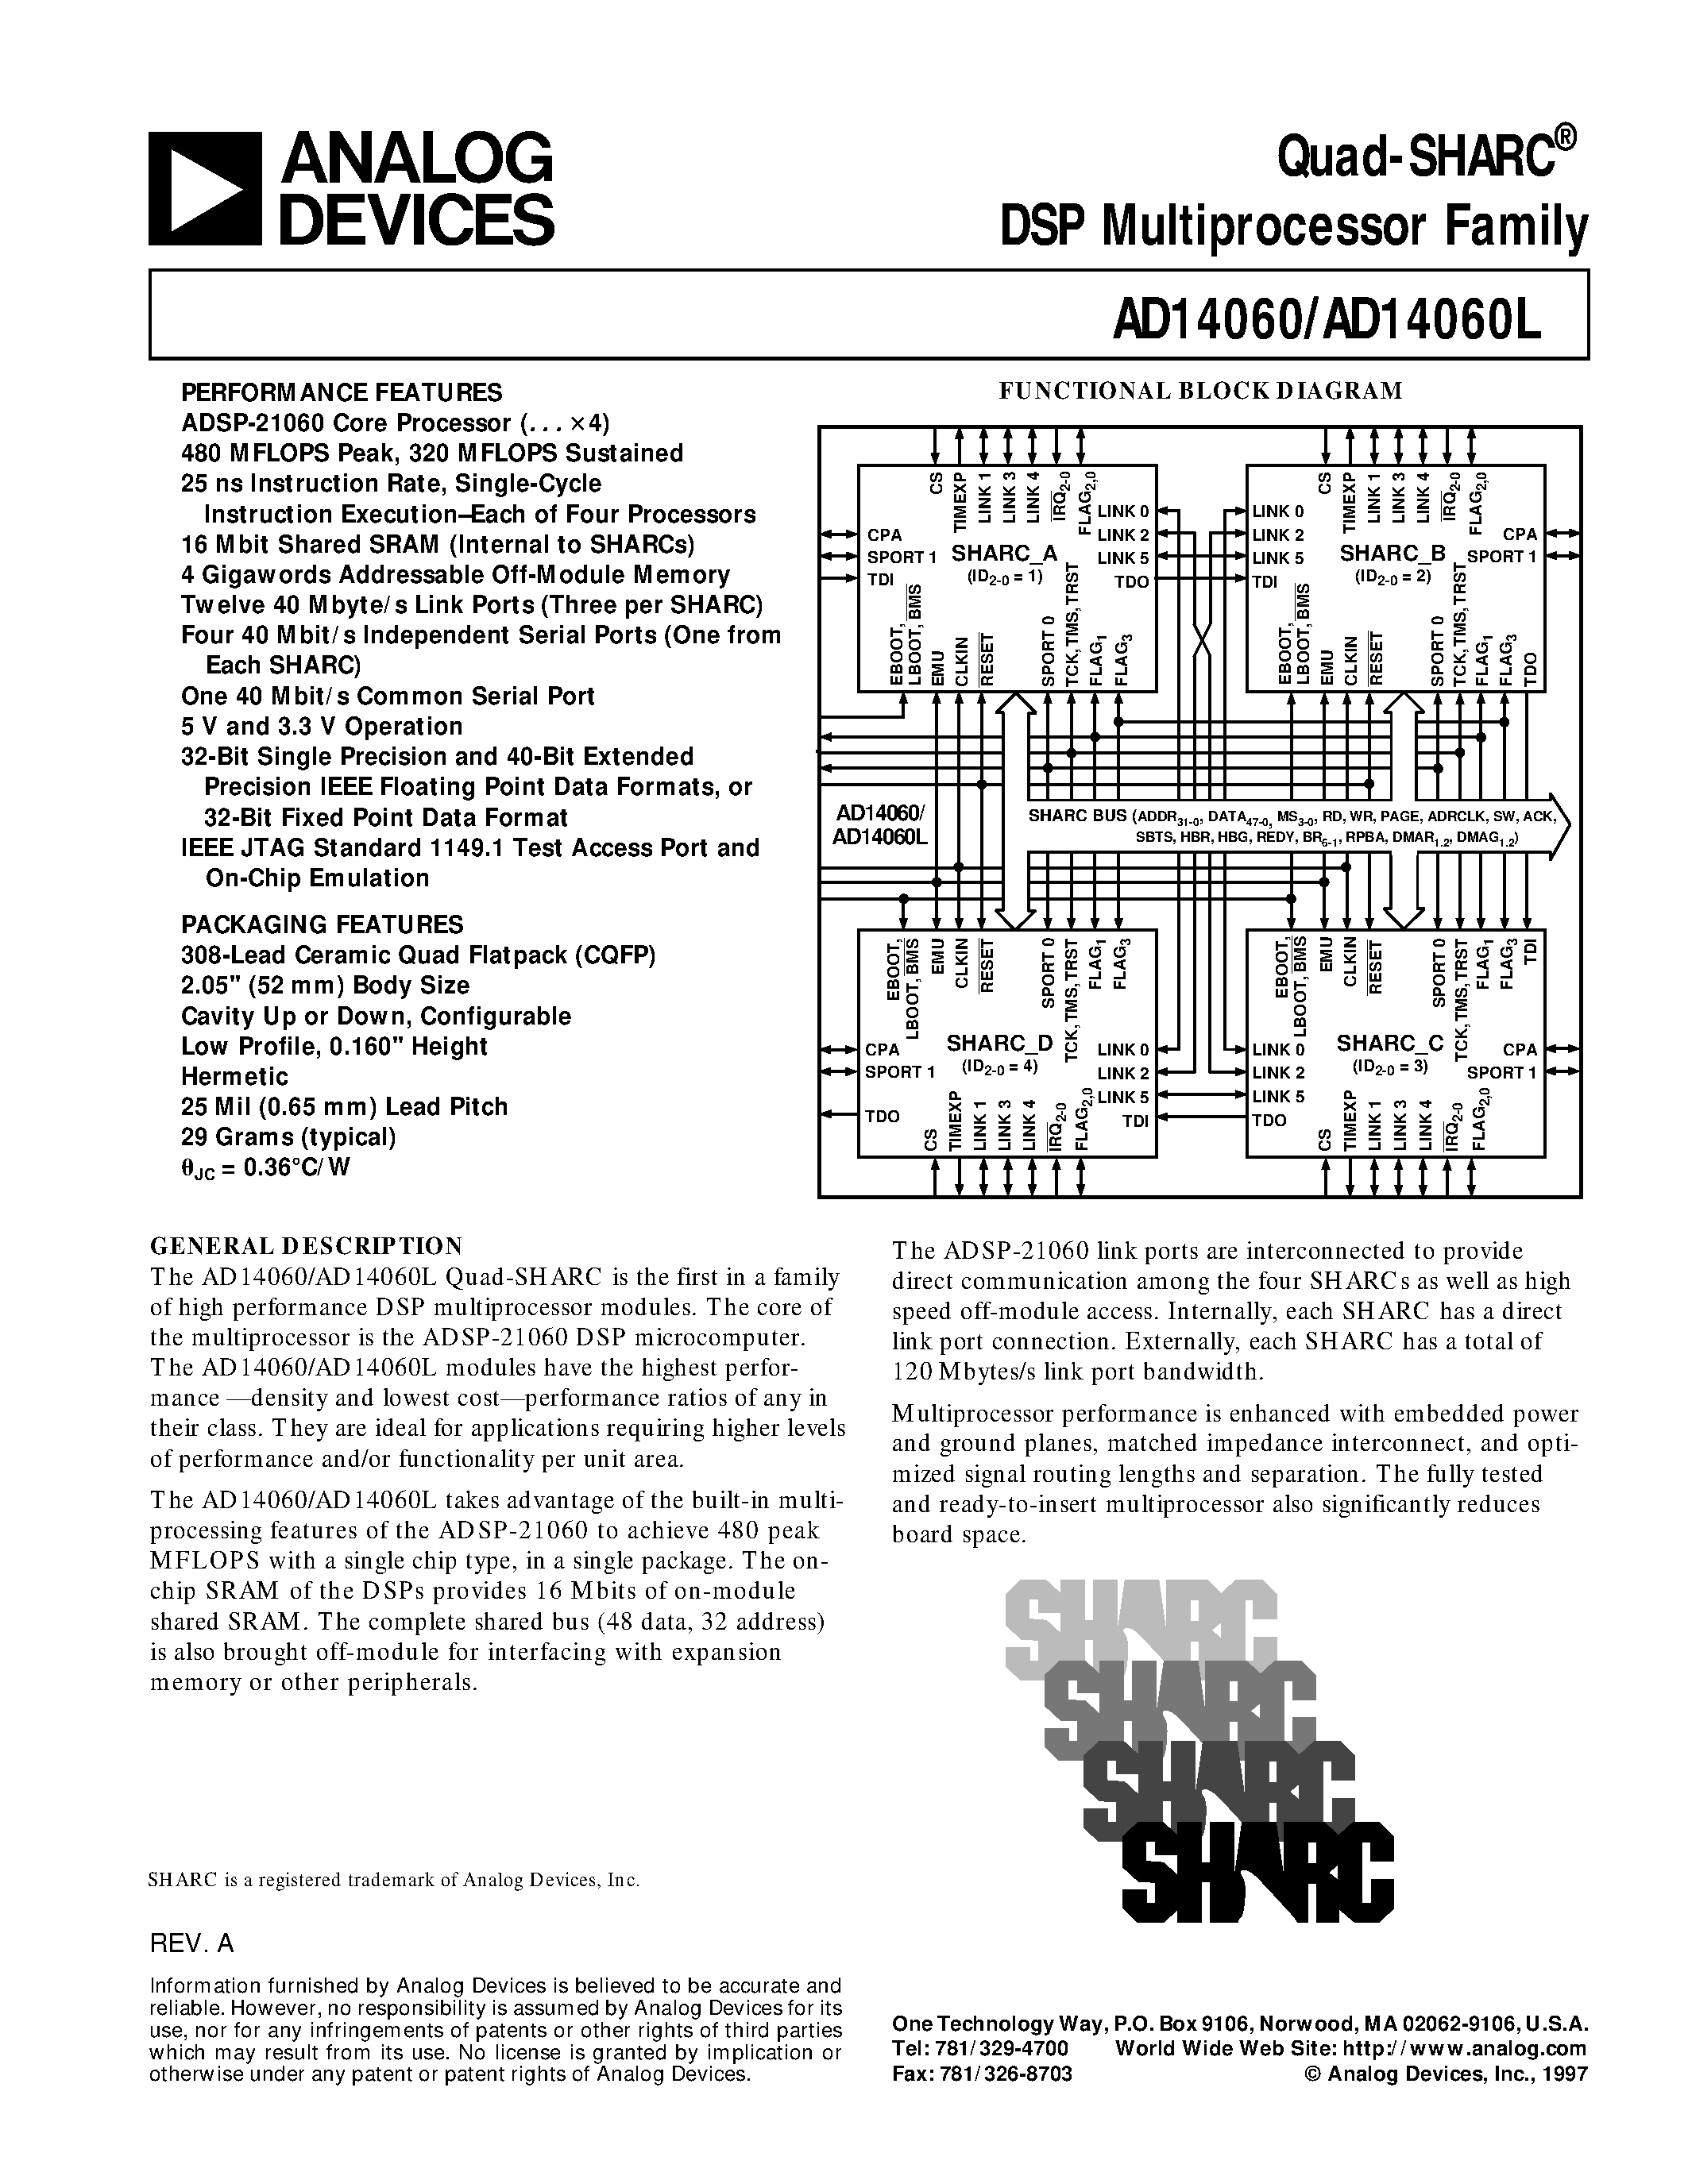 Даташит AD14060 - Quad-SHARC DSP Multiprocessor Family страница 1